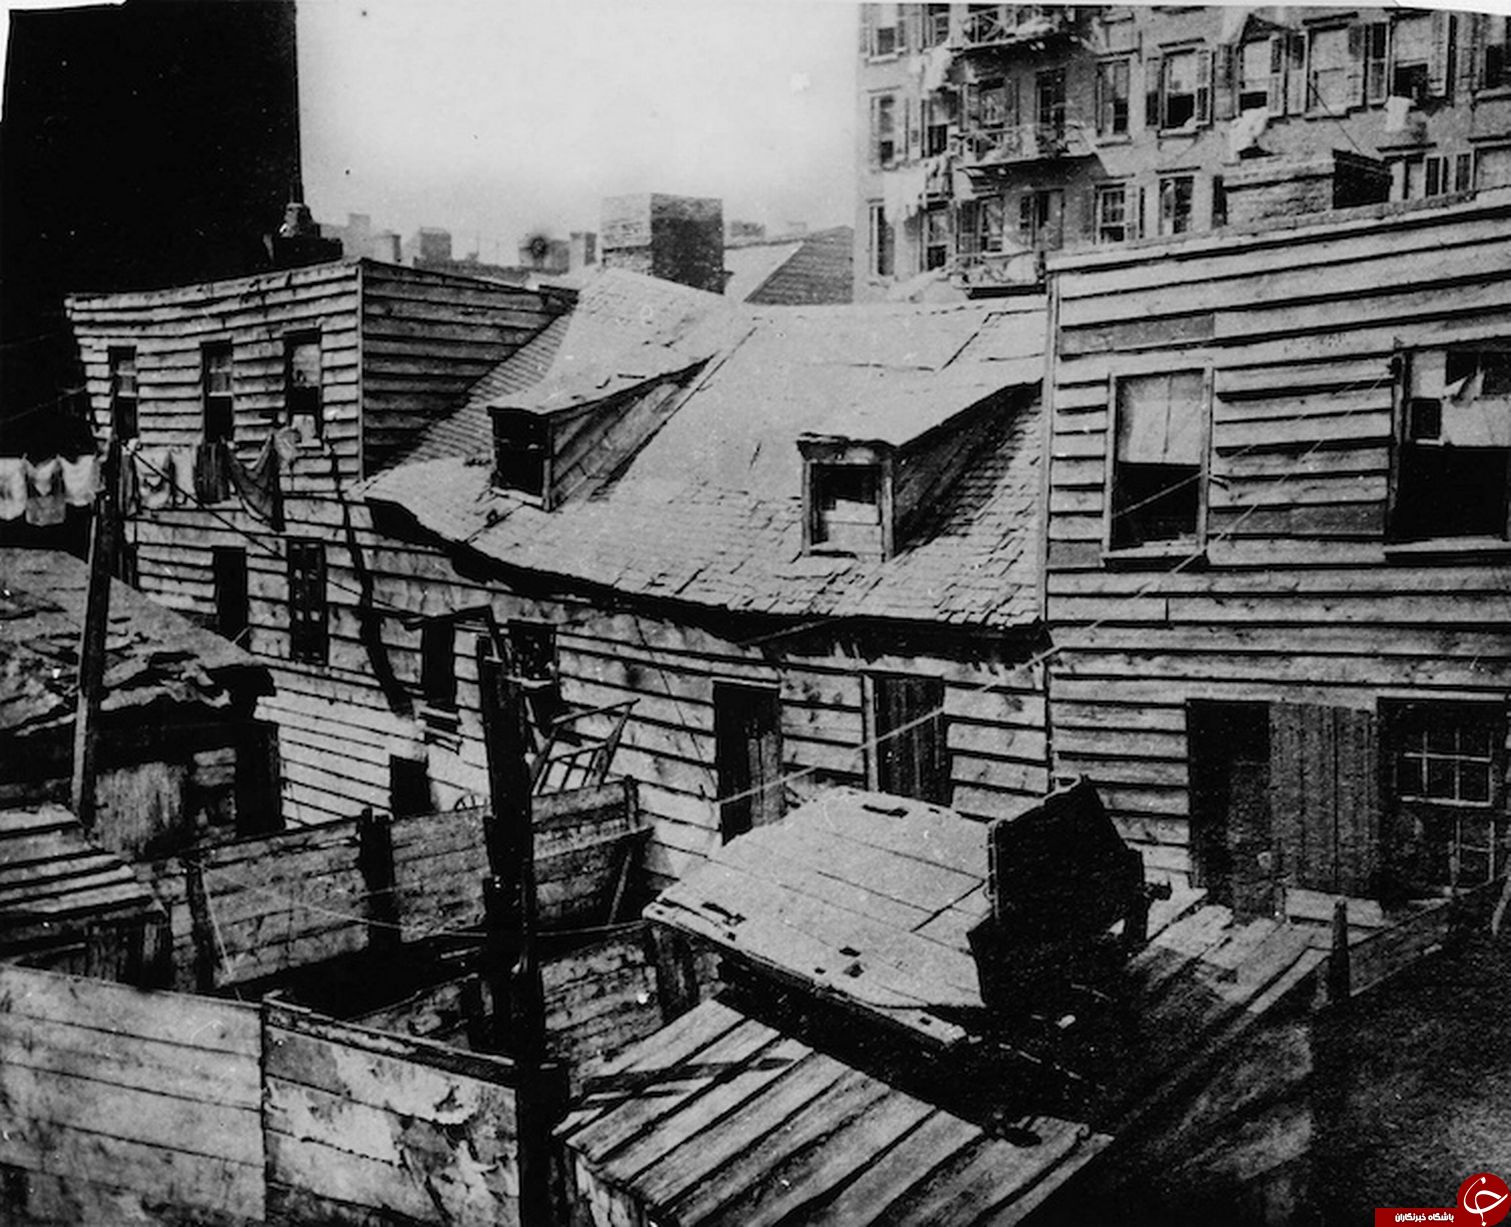 تصاویر دیده نشده از شهر نیویورک در قرن 19 میلادی